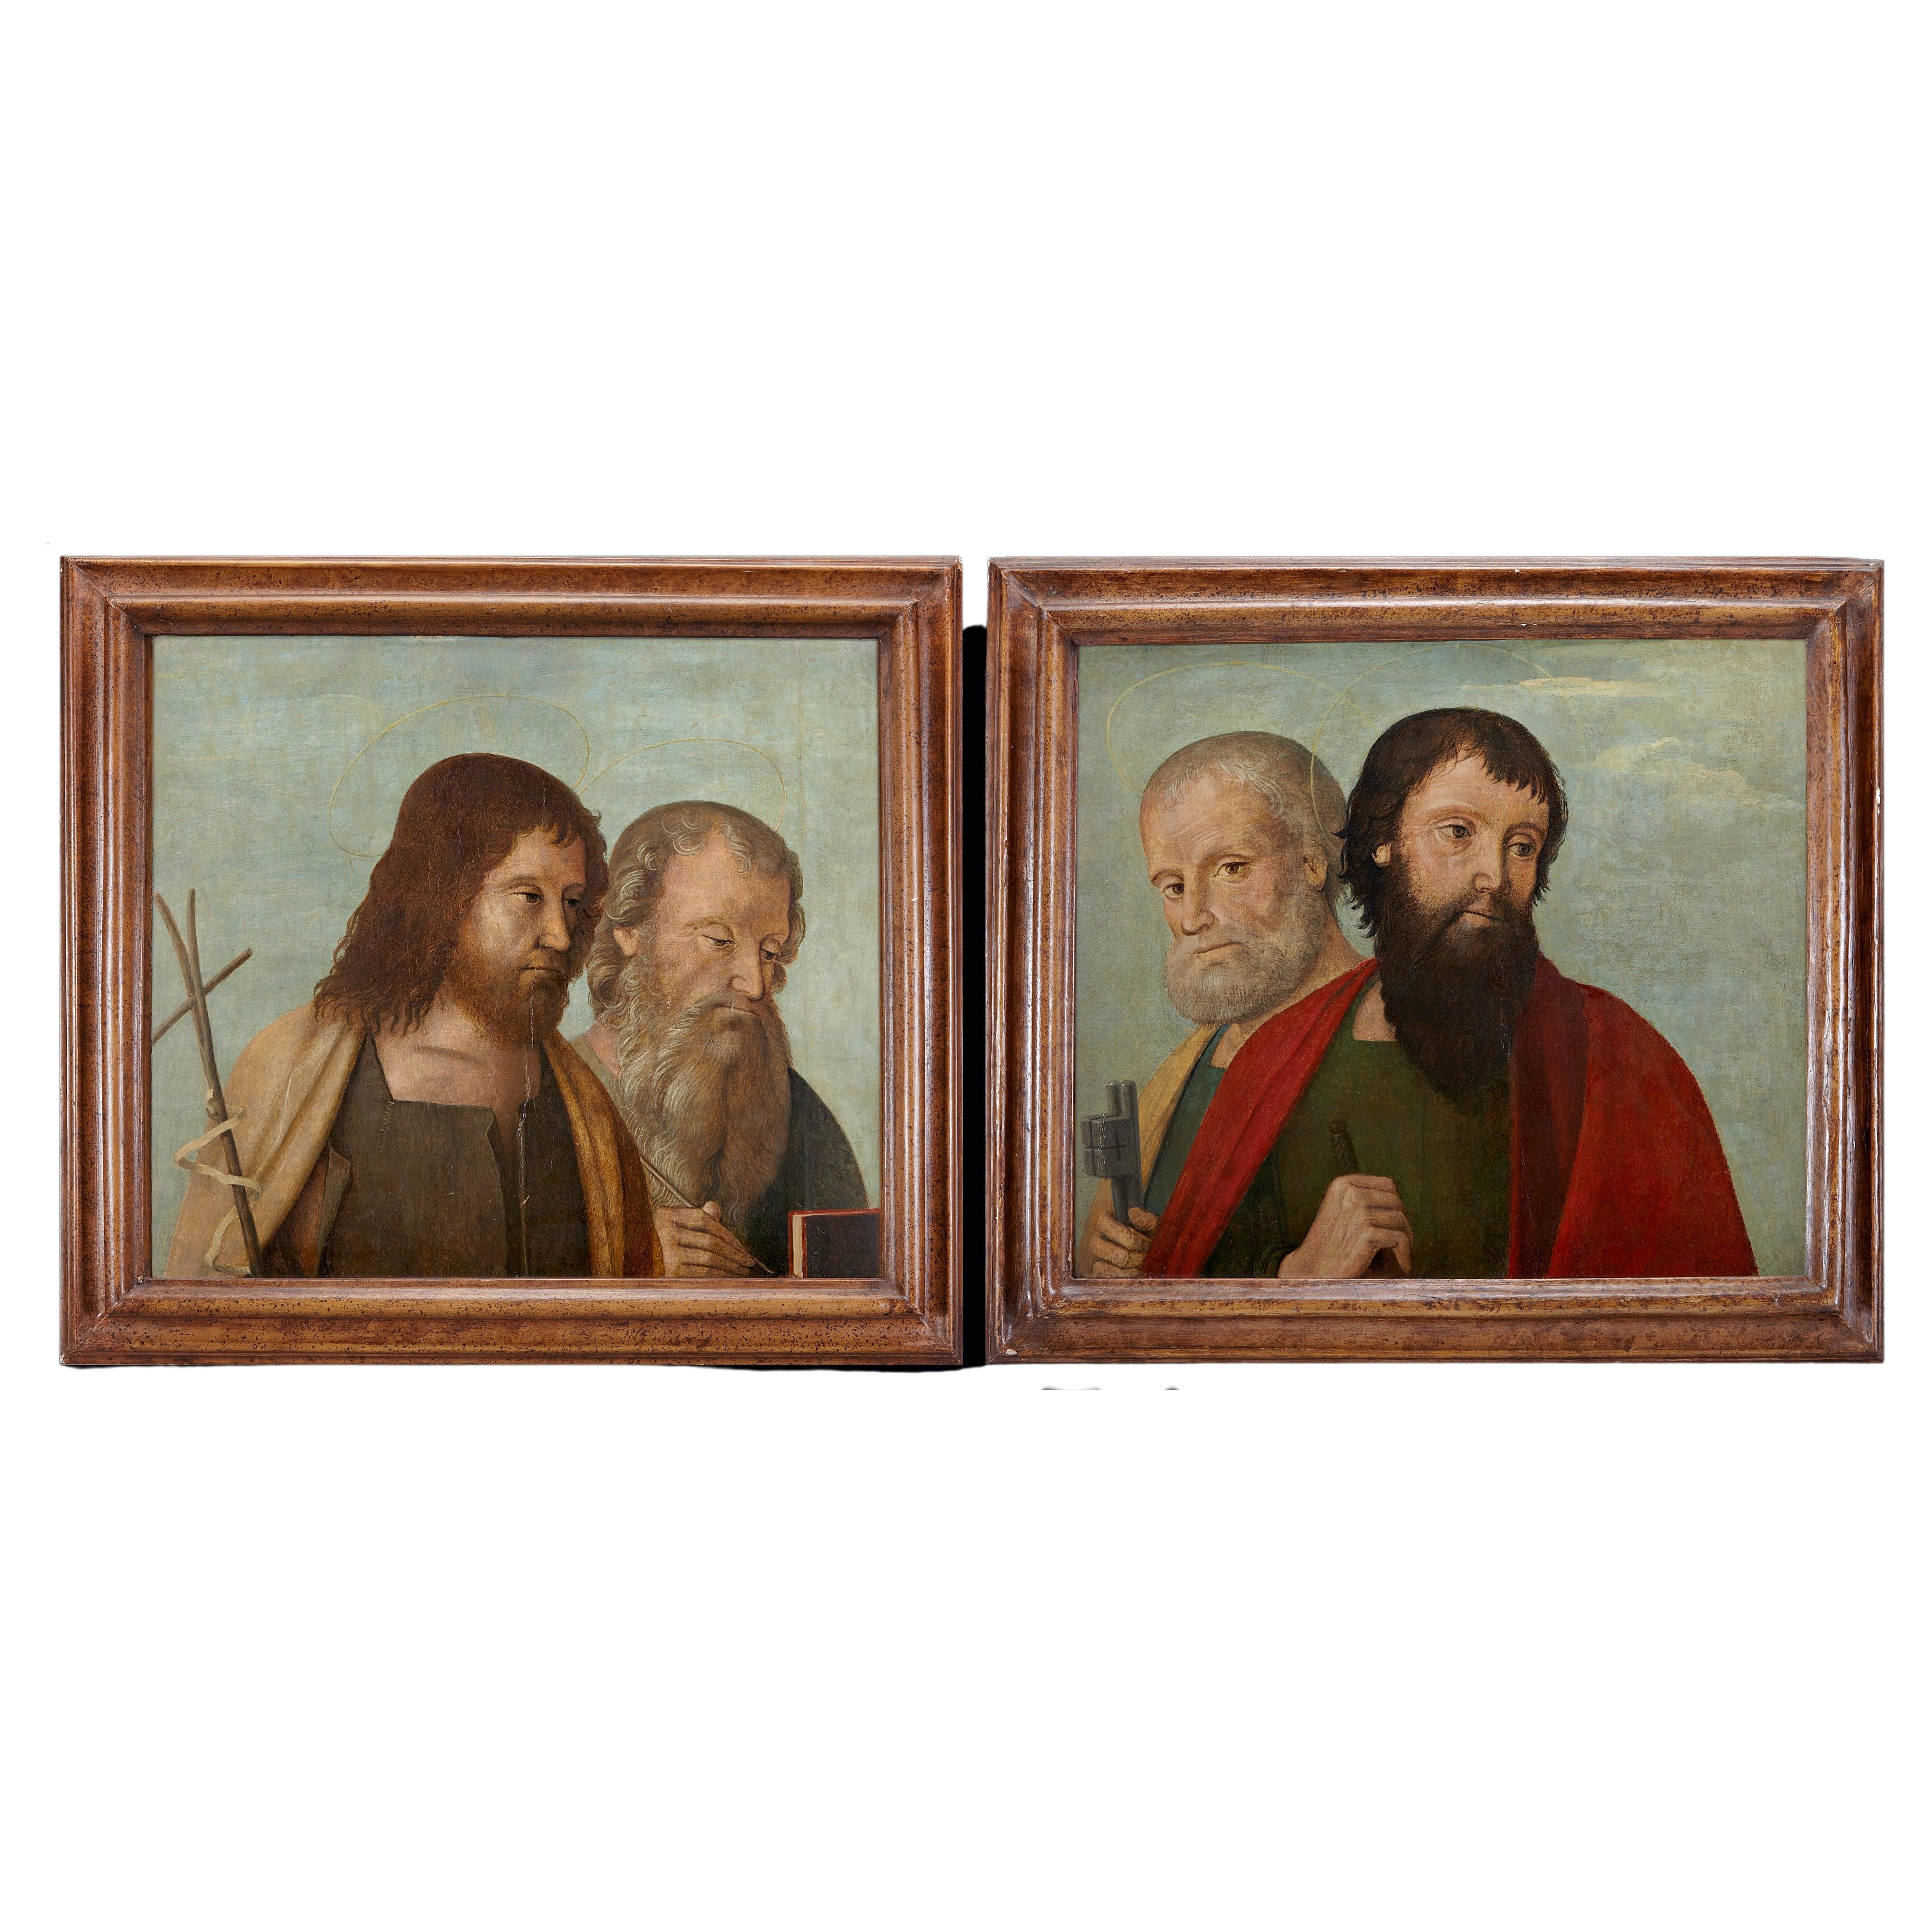 Zwei venezianische Tafelgemälde mit Heiligen und Aposteln aus dem frühen 16. Jahrhundert